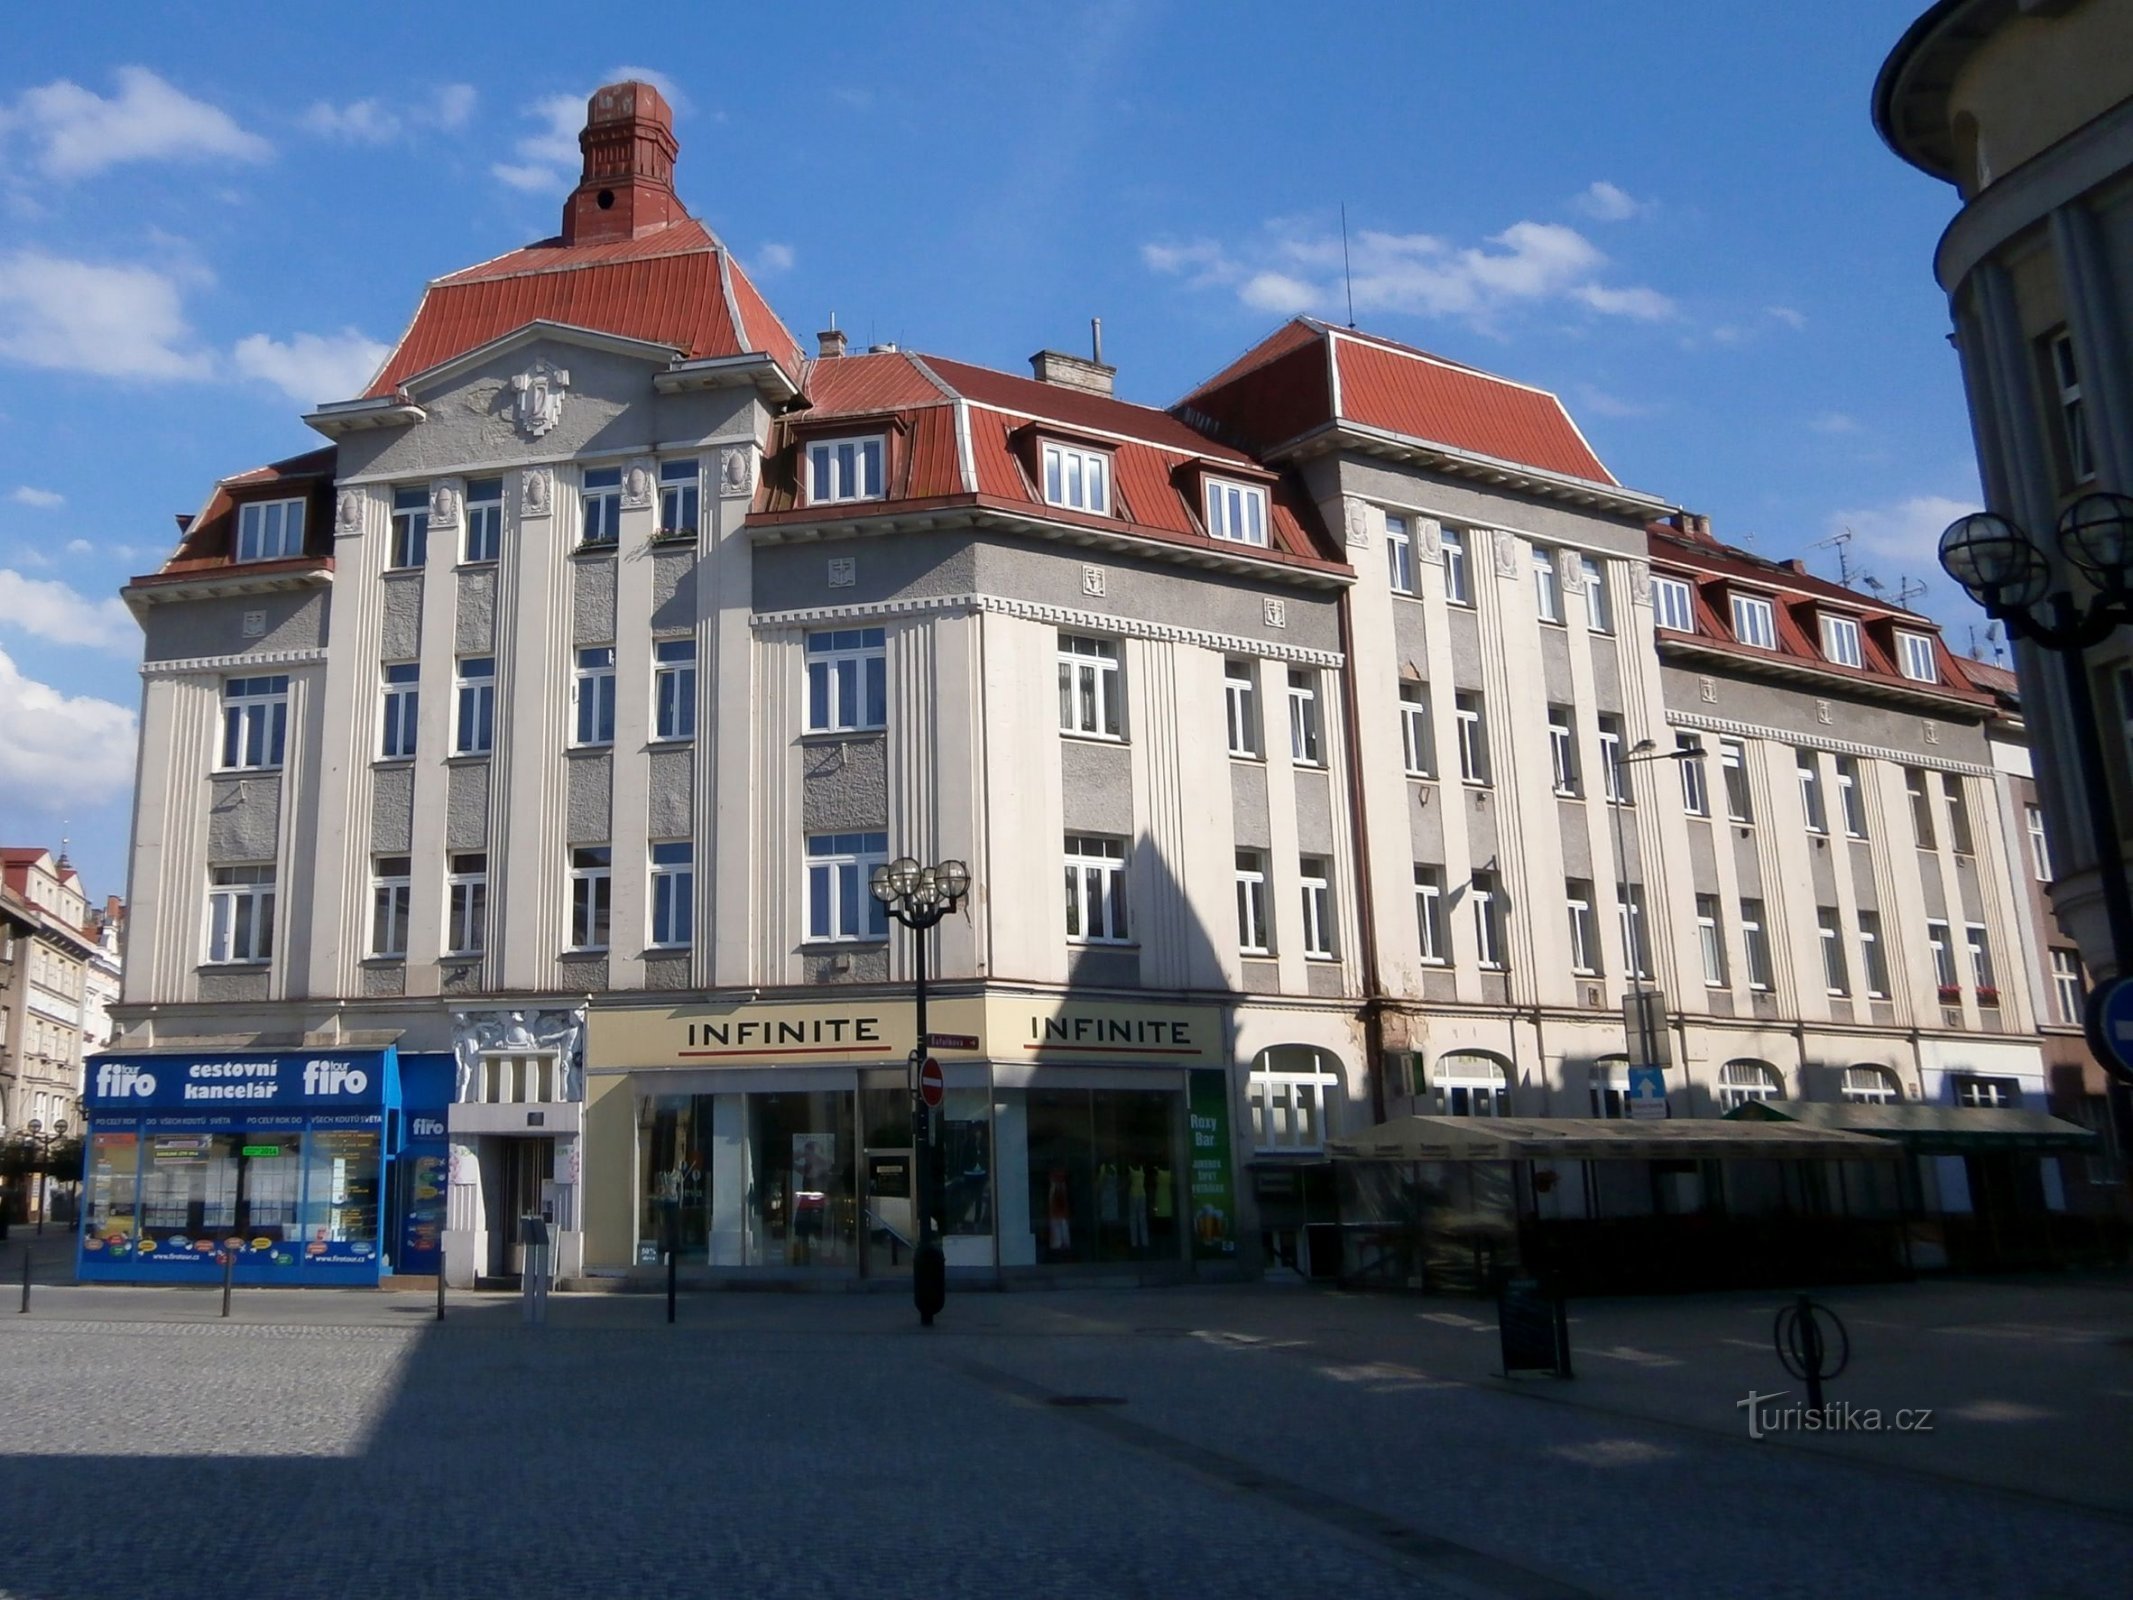 Trade house (Hradec Králové, 28.6.2014)